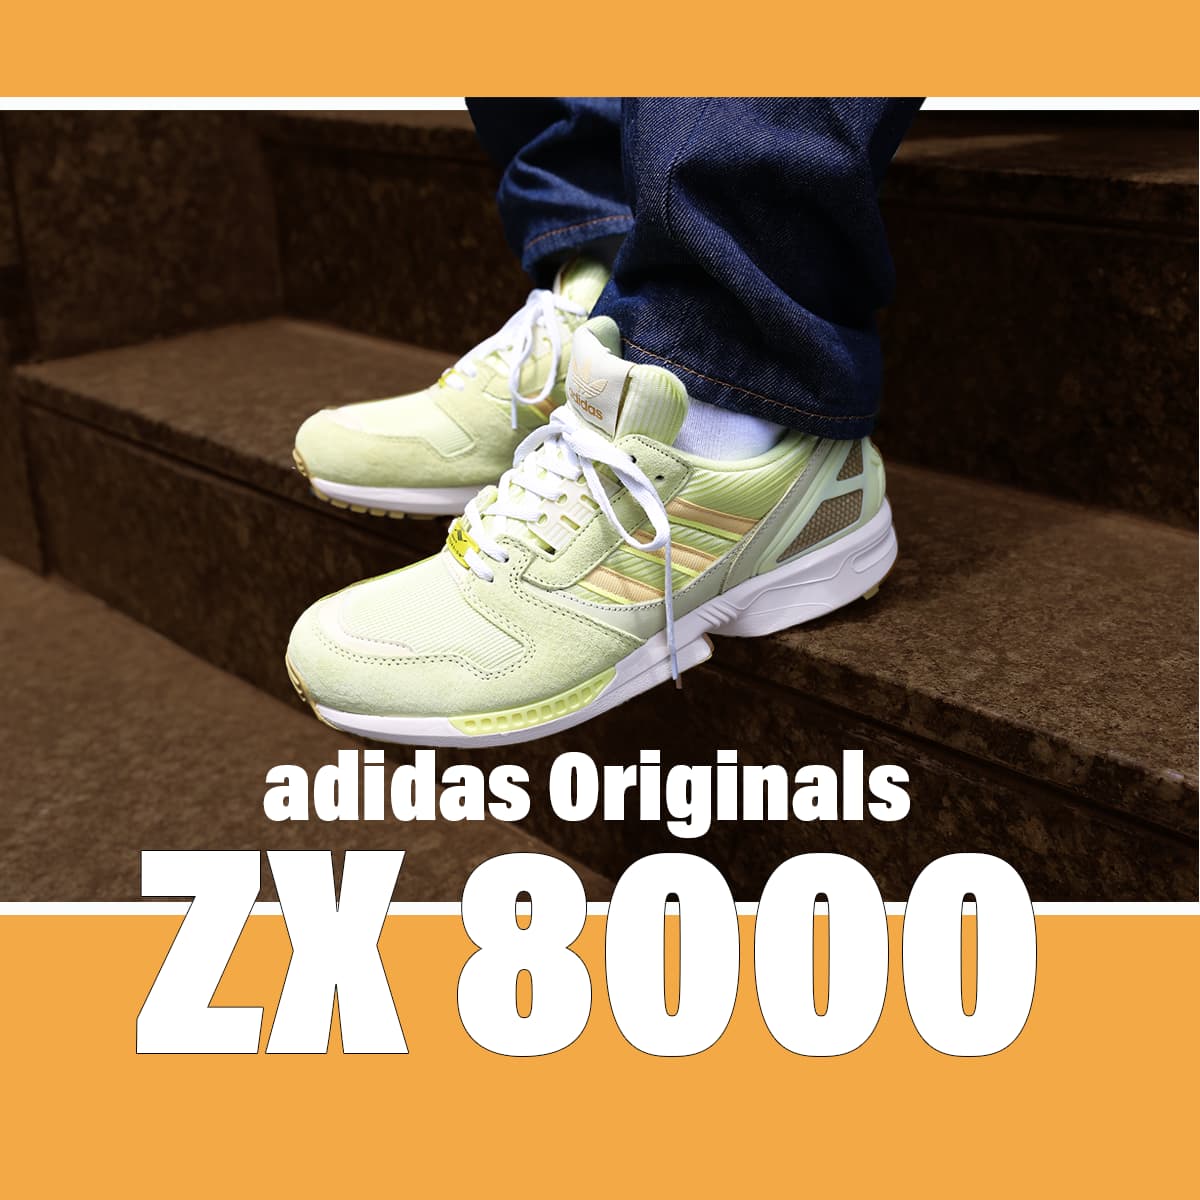 adidas-zx8000-0624